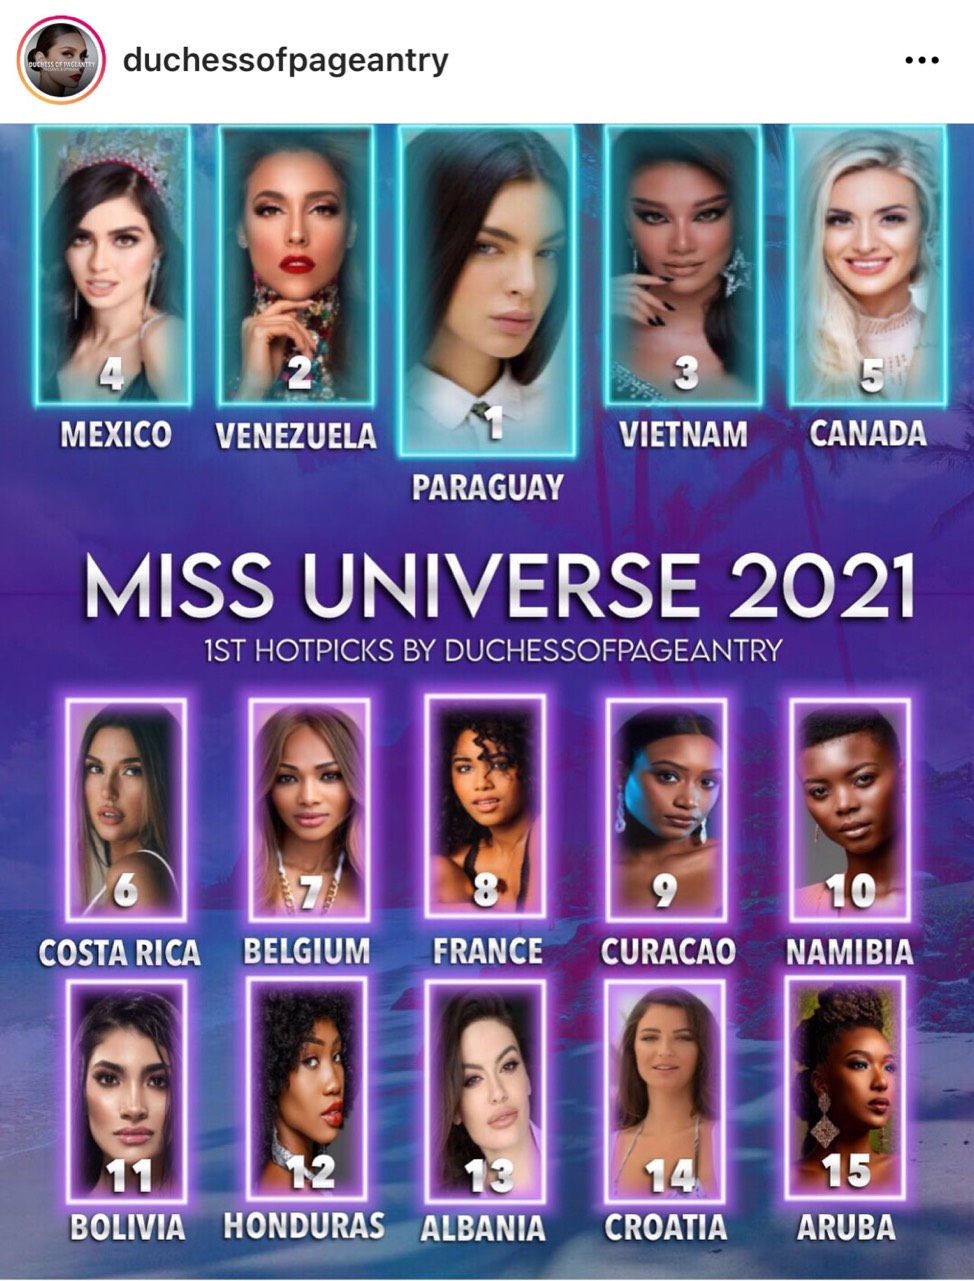 Trong cùng 1 ngày, 2 chuyên trang sắc đẹp quốc tế là Top Misses và Duchess Pageantry đều dự đoán Á hậu Kim Duyên sẽ trở thành Á hậu 2 Miss Universe 2021 khiến cư dân mạng không khỏi bất ngờ